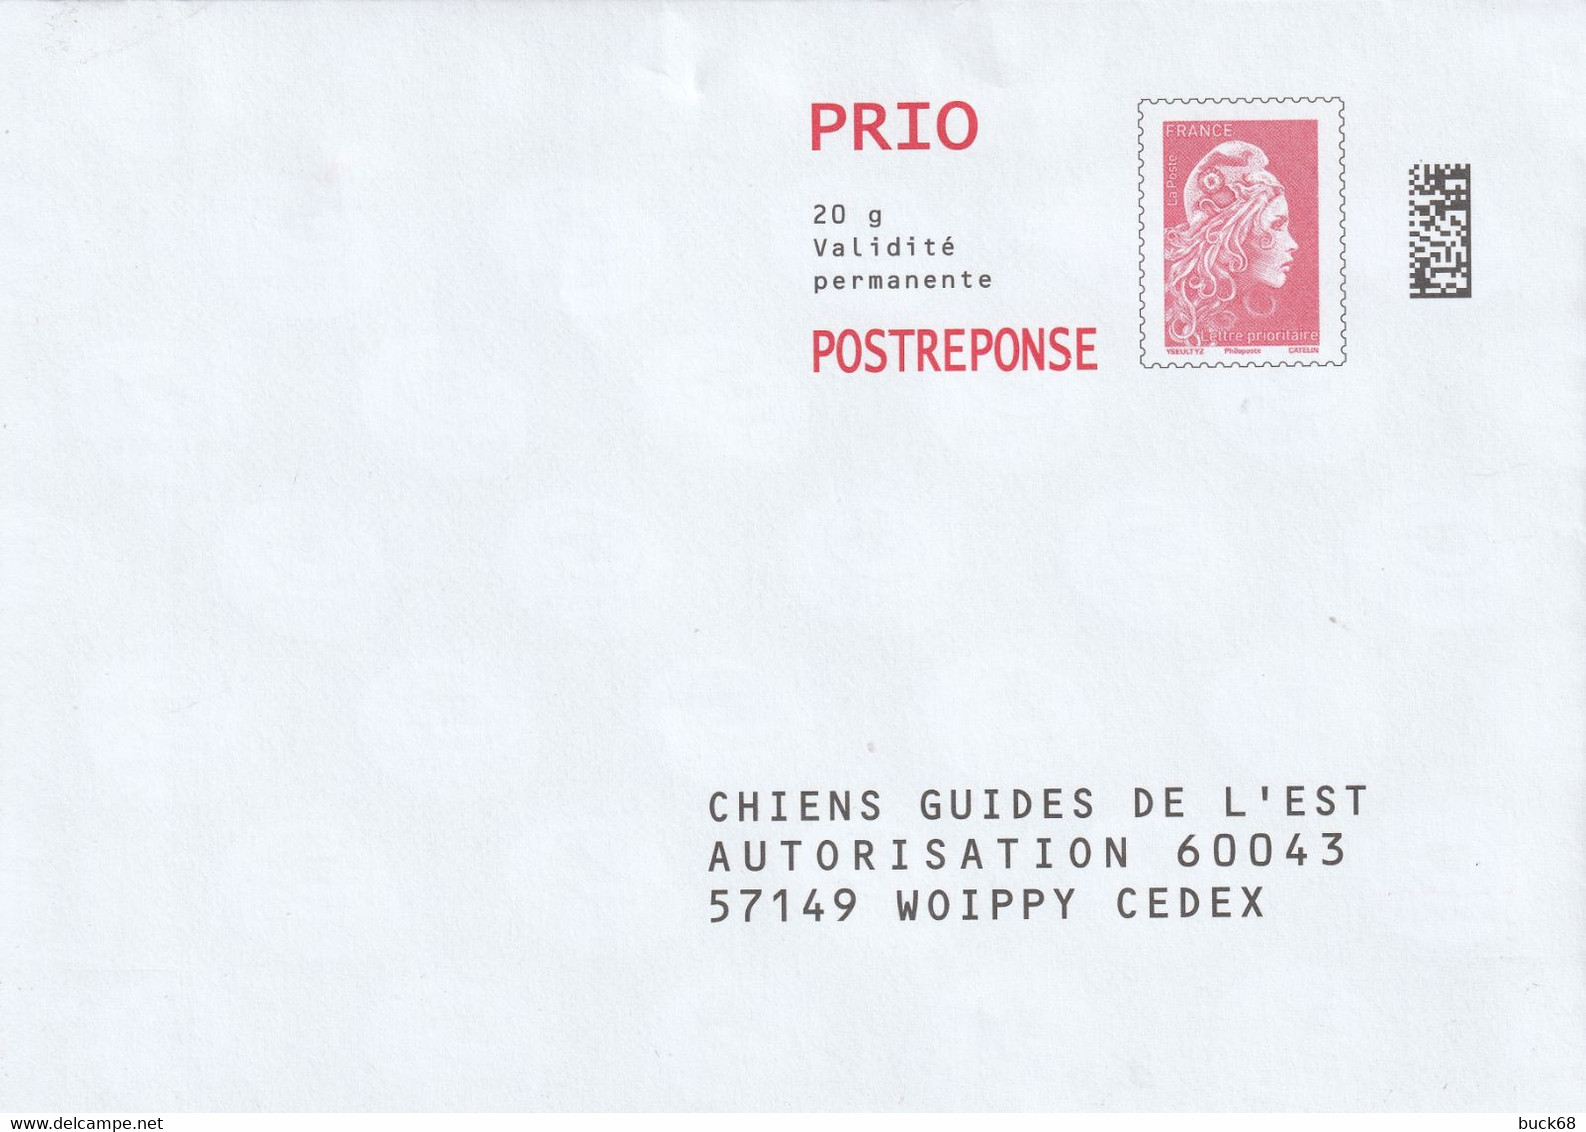 FRANCE Enveloppe Entier Postal Marianne D'YZ (street Artist) Prio 20 G Chiens Guides De L'Est - Cards/T Return Covers